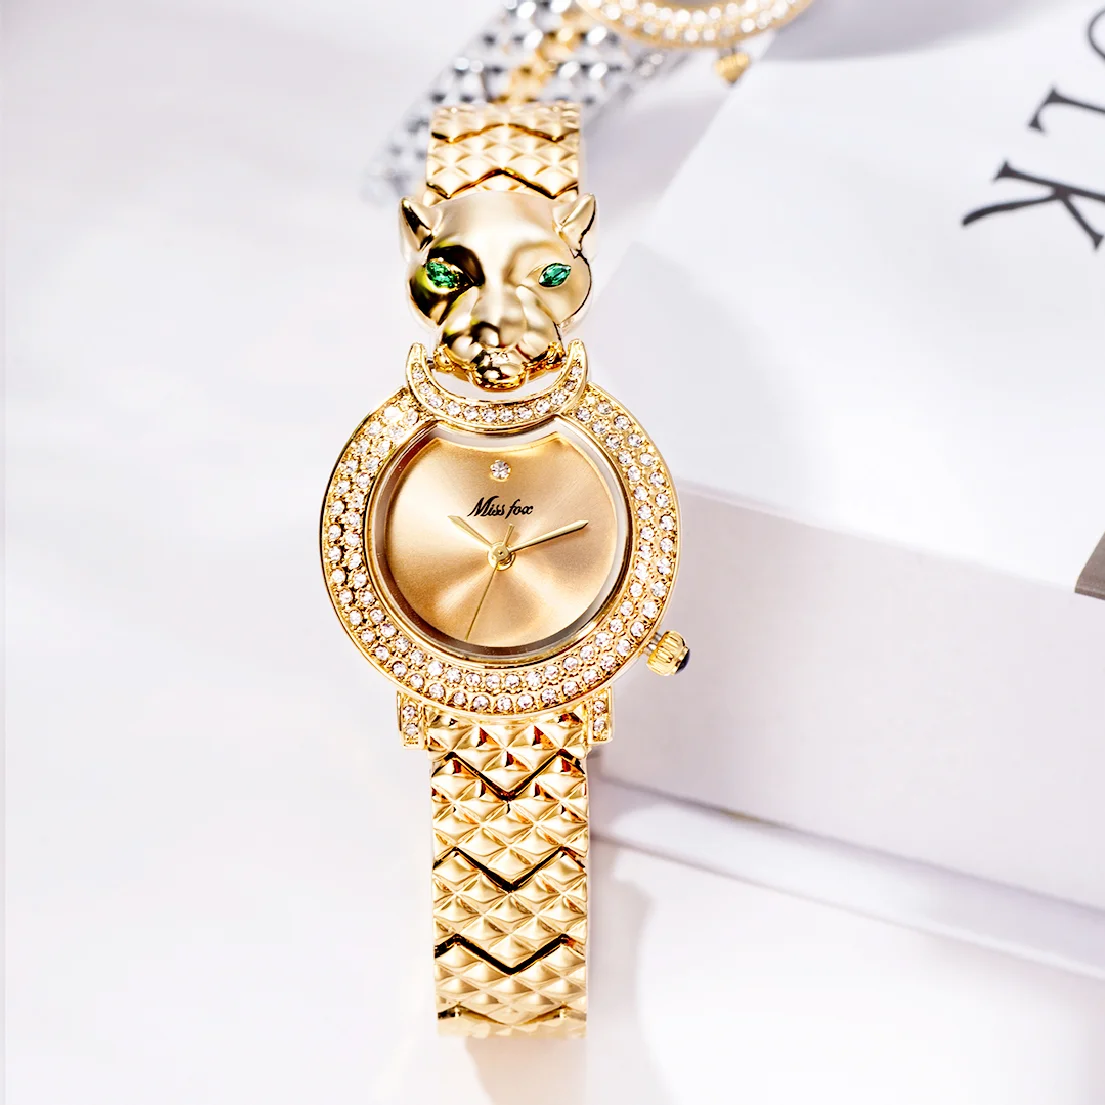 Leopard Watch for Women Green Diamond Eyes Steel Bracelet Fashion Watch Female Top Luxury Watches Ladies Jewelry Reloj Mujer enlarge